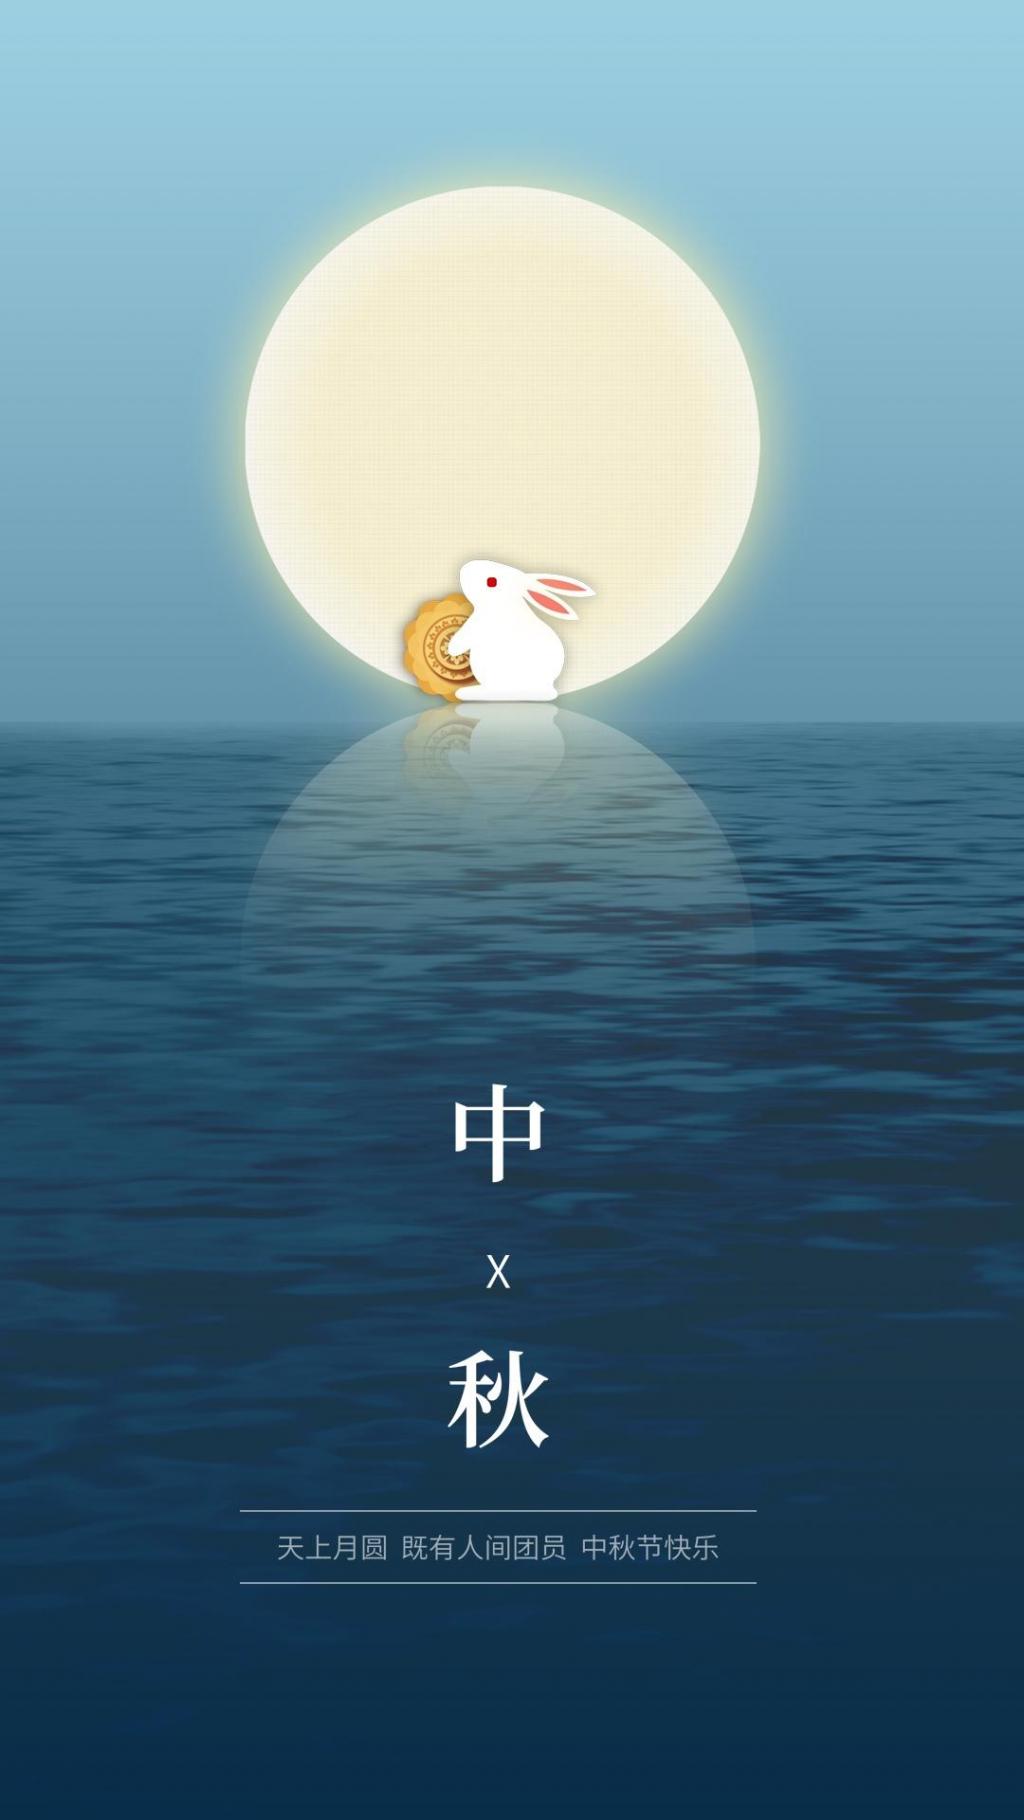 传统节日之中秋佳节圆月玉兔插画